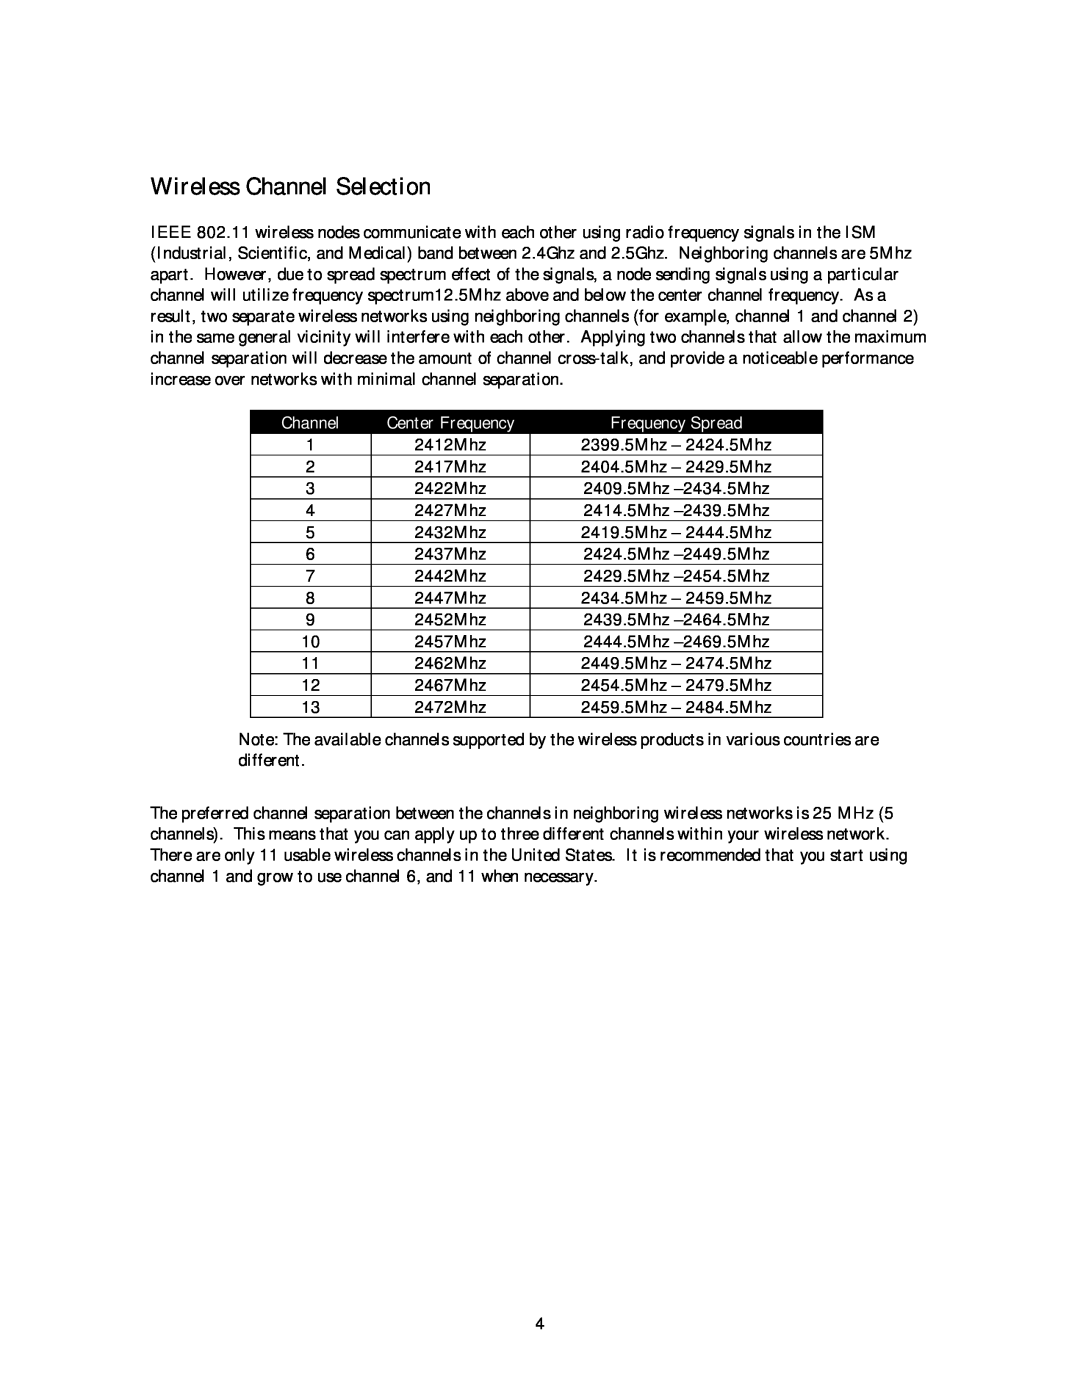 NETGEAR MA 101 manual Wireless Channel Selection, Frequency Spread 